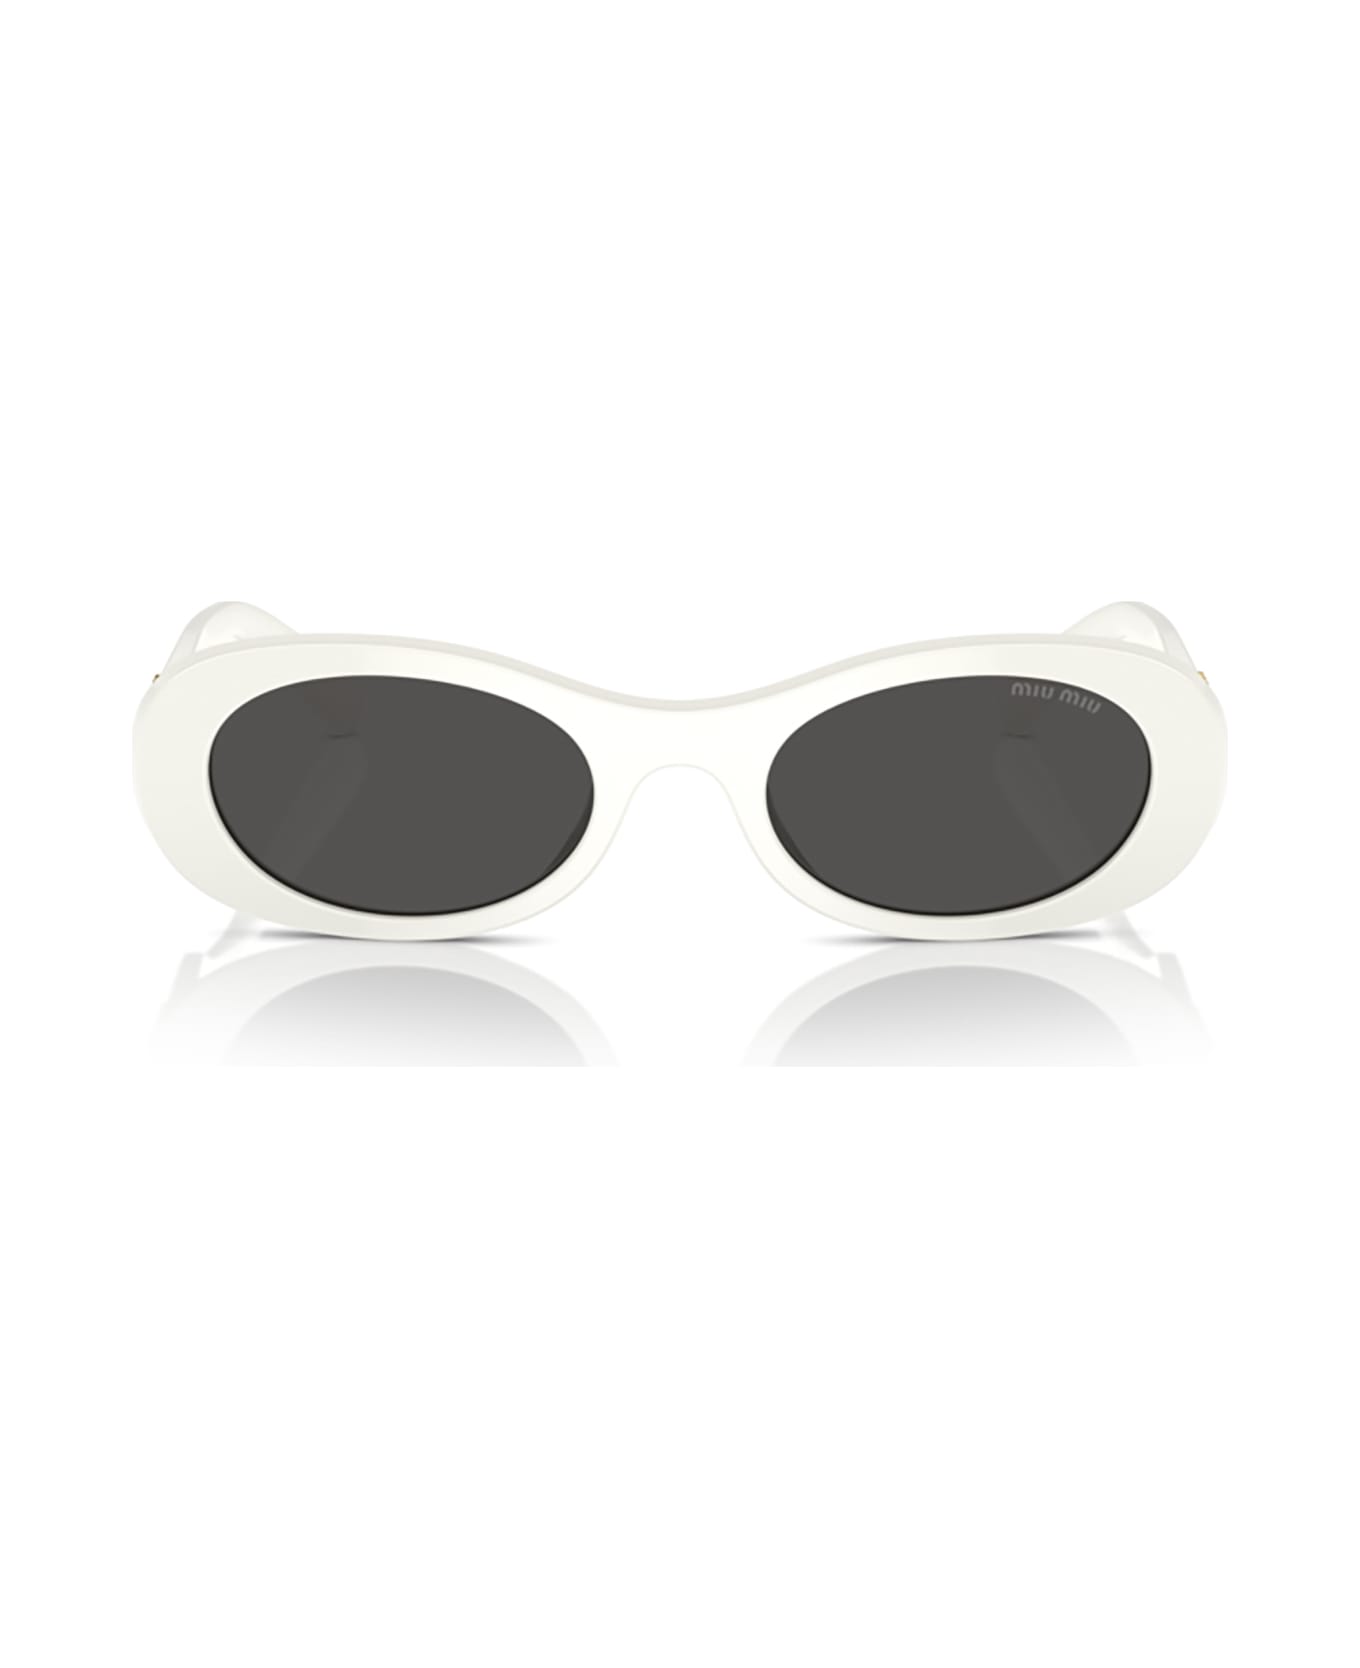 Miu Miu Eyewear Mu 06zs White Ivory Sunglasses - White Ivory